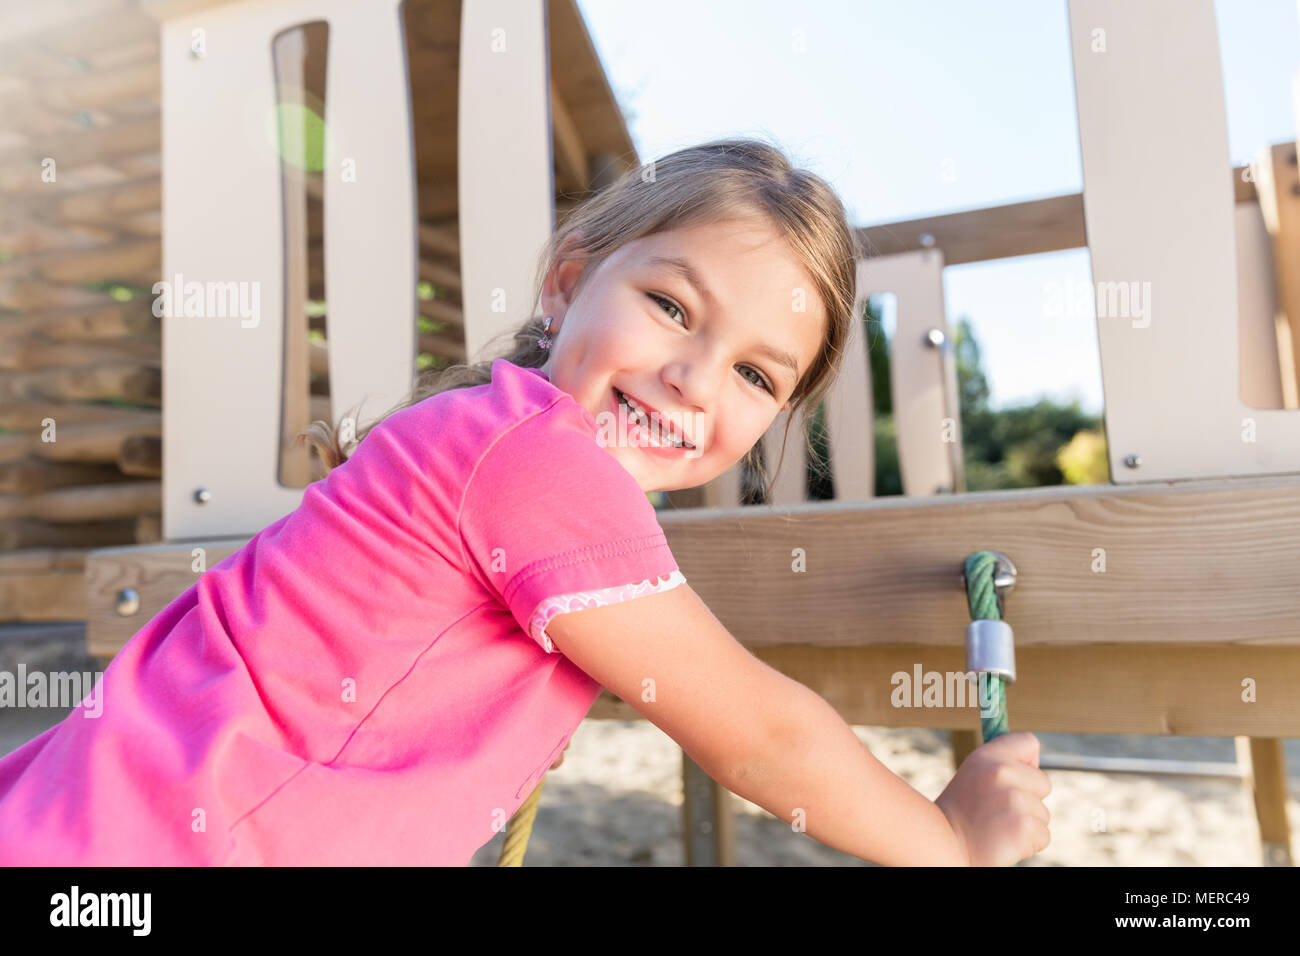 Little girl climbing on adventure playground Stock Photo